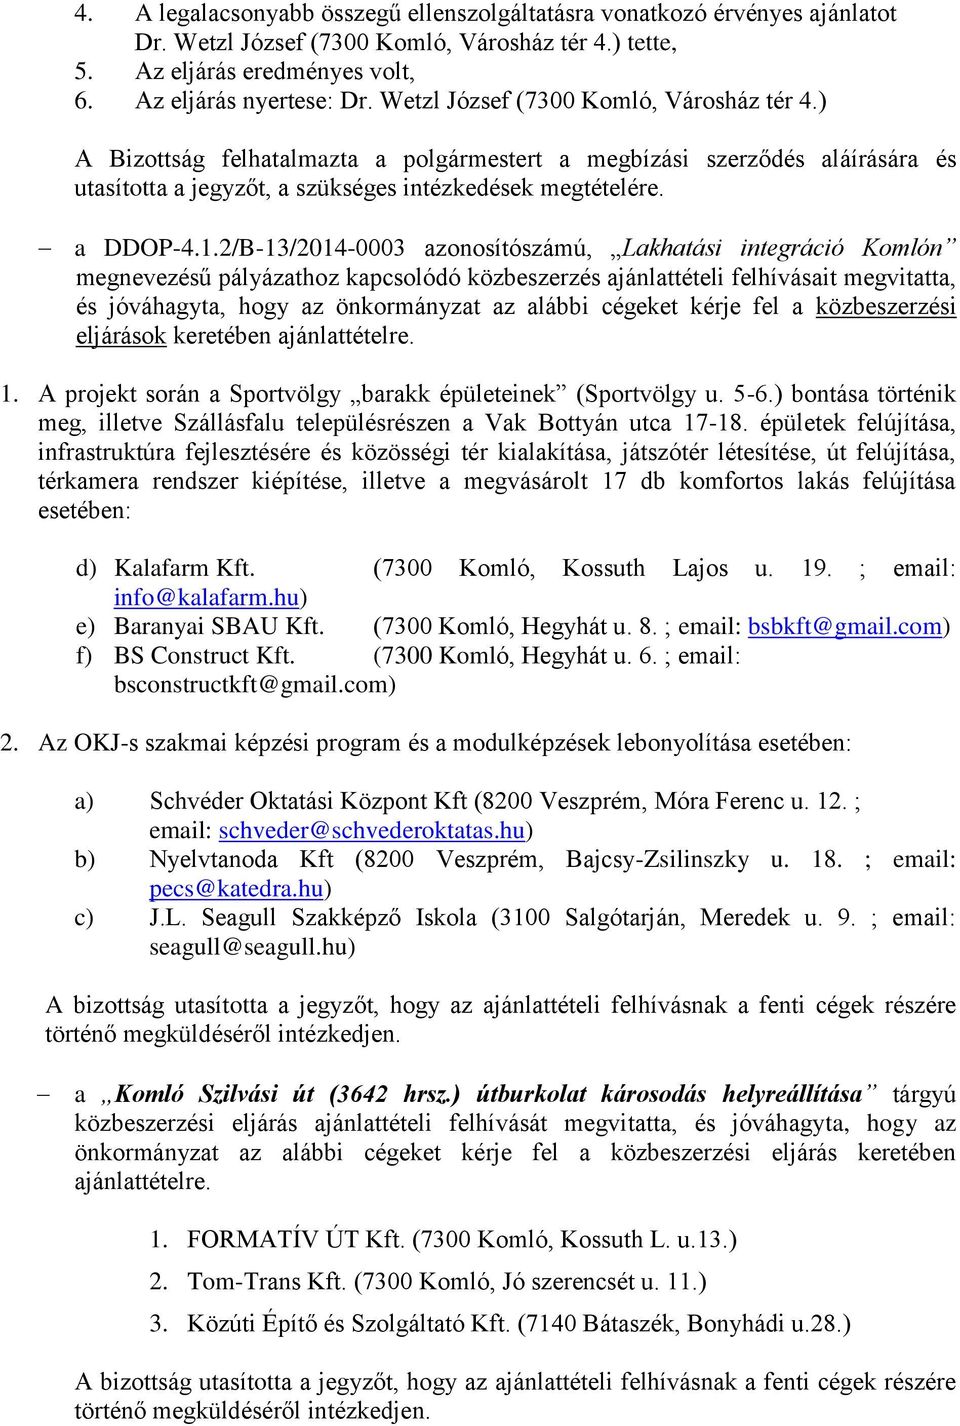 2/B-13/2014-0003 azonosítószámú, Lakhatási integráció Komlón megnevezésű pályázathoz kapcsolódó közbeszerzés ajánlattételi felhívásait megvitatta, és jóváhagyta, hogy az önkormányzat az alábbi